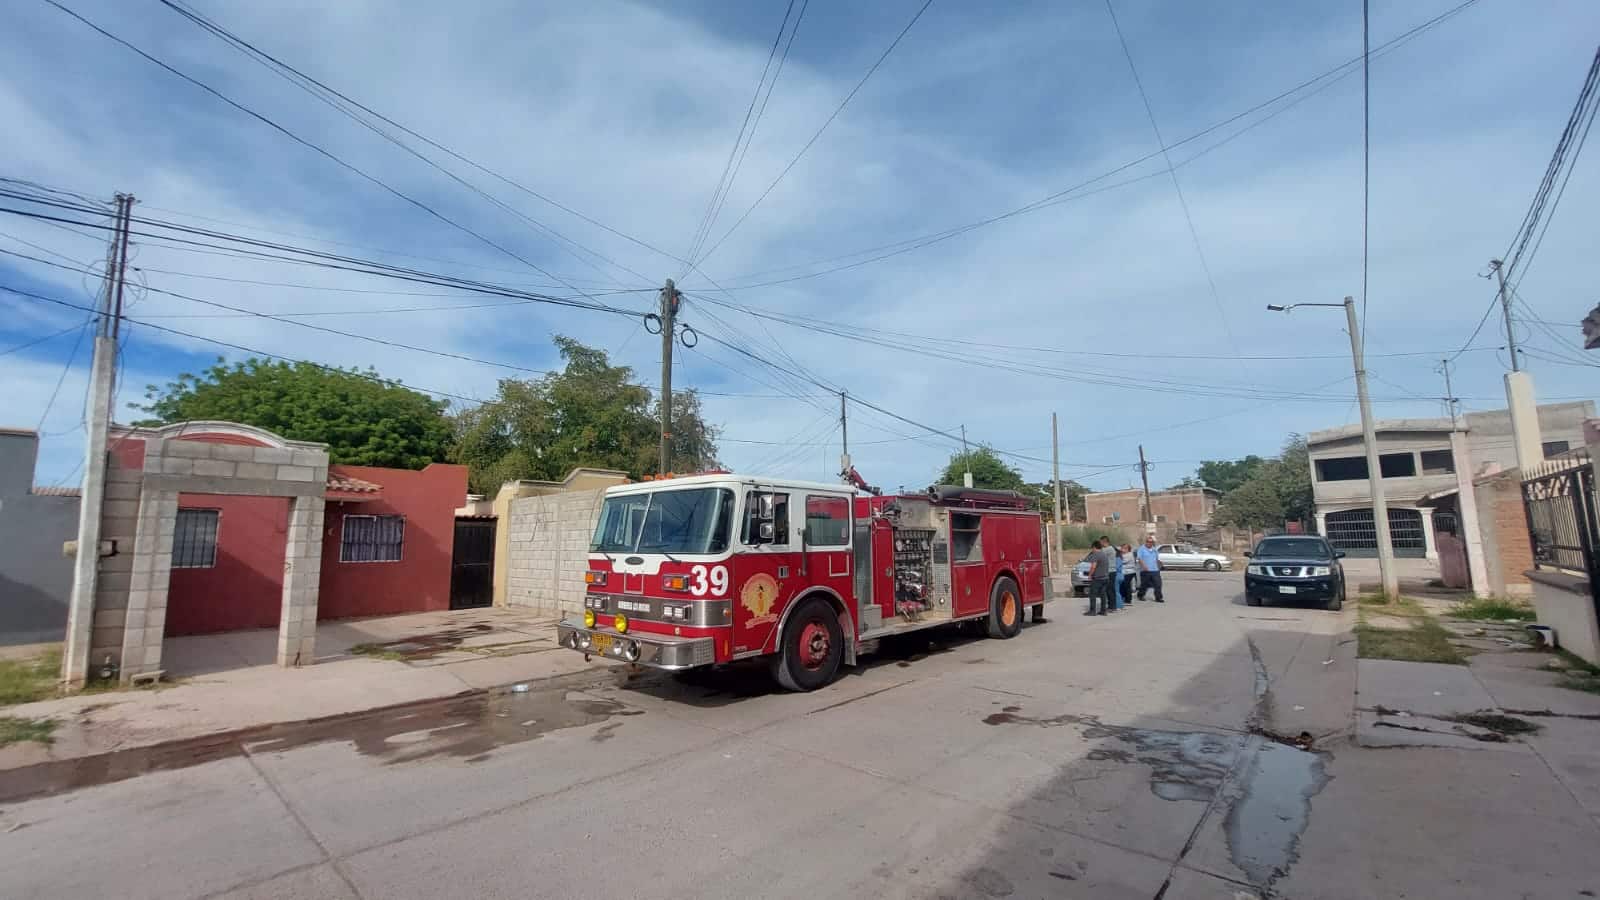 ¡Fuego en la sala! Cortocircuito en computadora causa incendio en casa de Los Cedros en Los Mochis